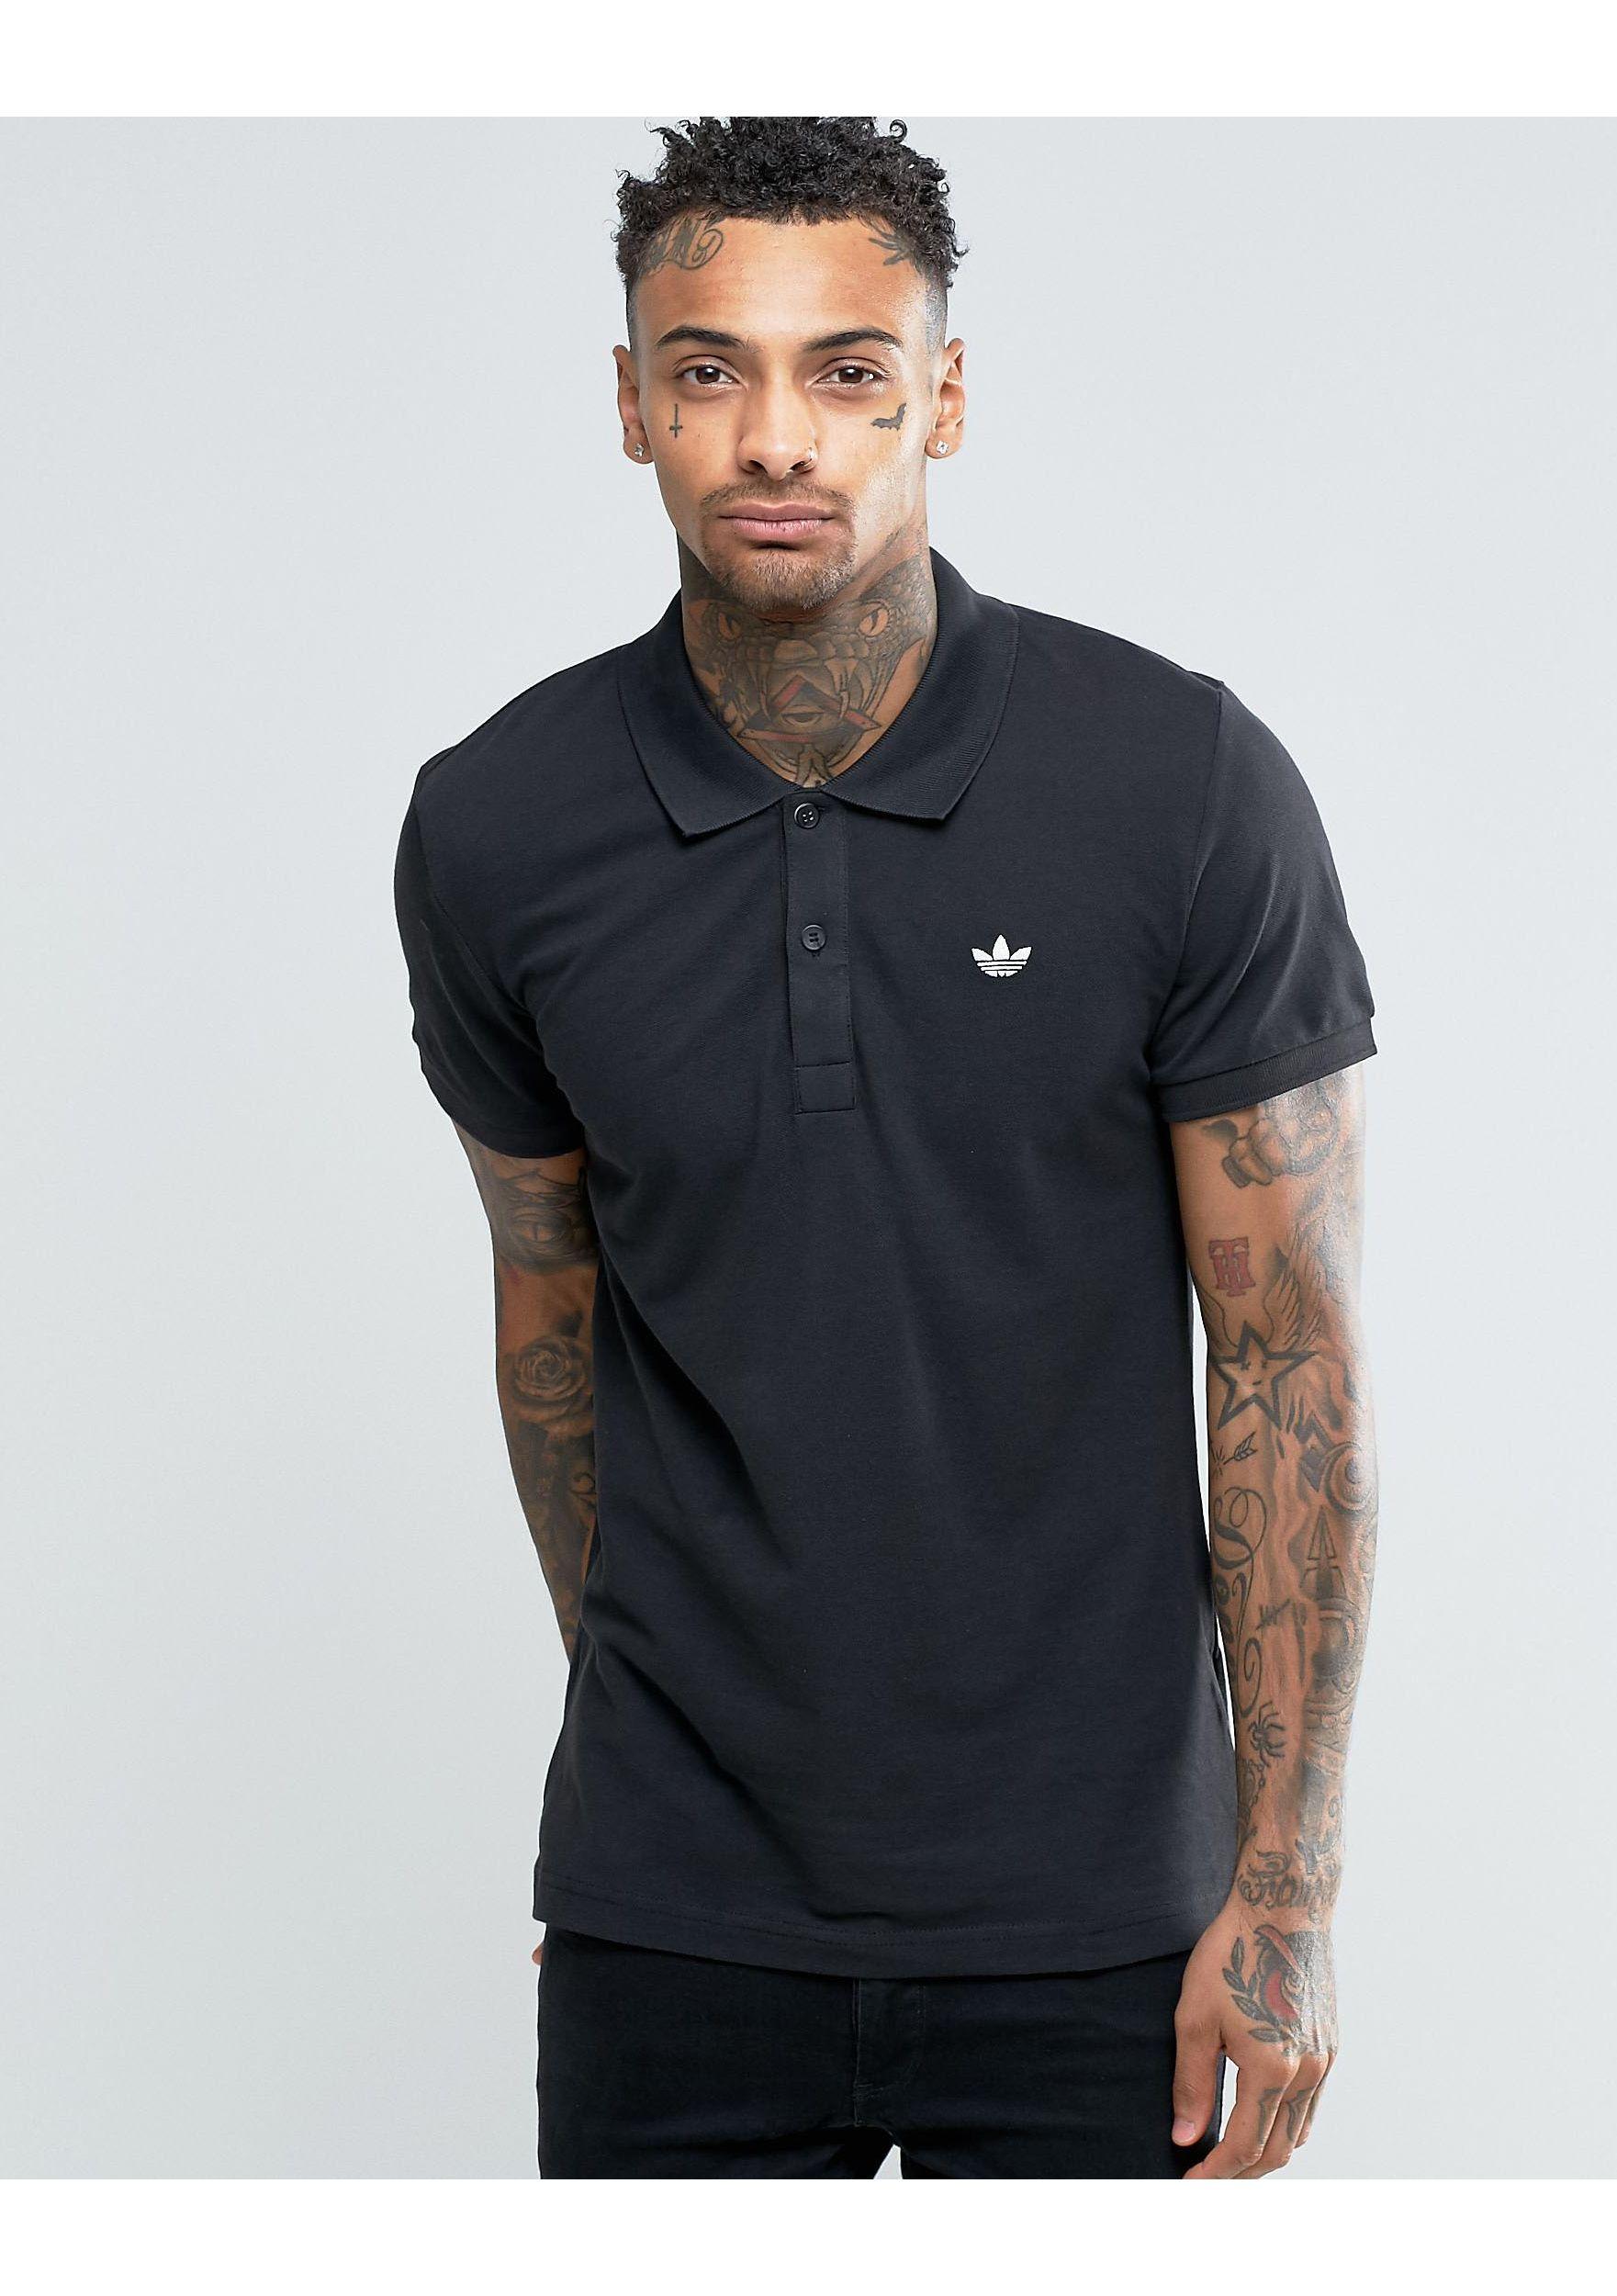 Mejeriprodukter cache At sige sandheden adidas Originals Trefoil Polo Shirt Ab8298 in Black for Men | Lyst